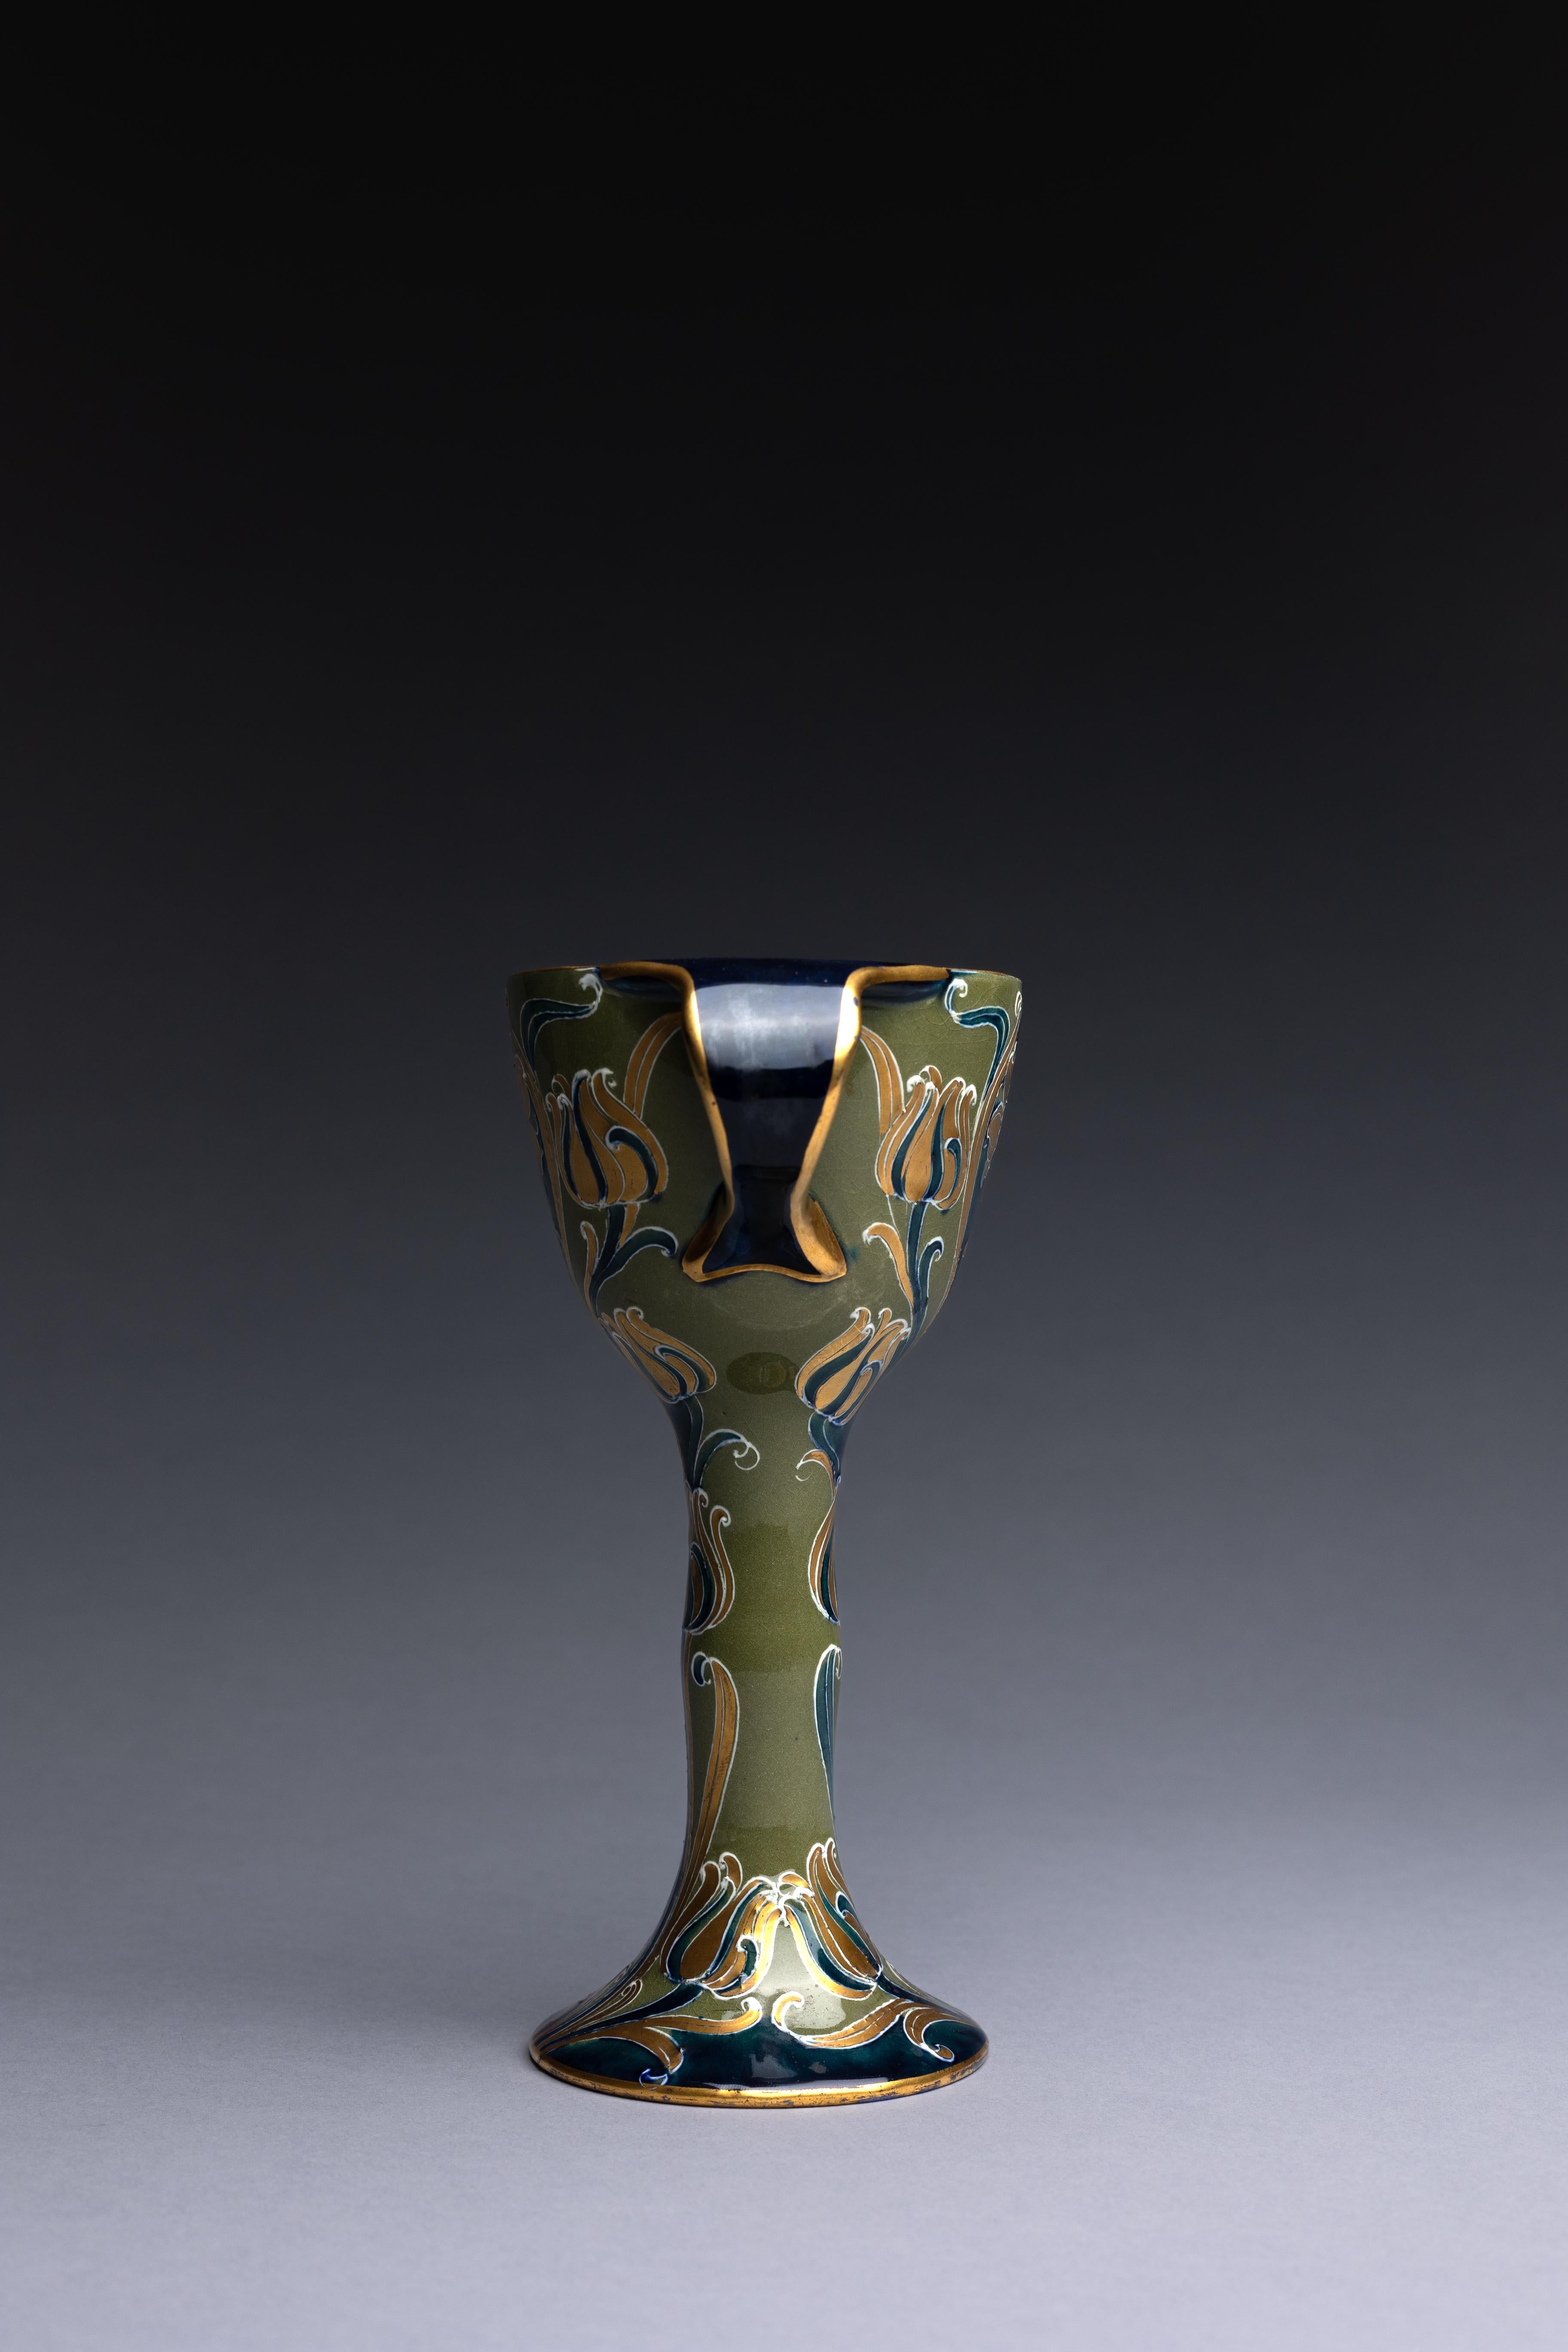 Un gobelet décoratif en poterie créé par William Moorcroft pour James MacIntyre & Co. en 1903.

Ce gobelet fait partie de la ligne Florian vert et or de William Moorcroft. Pour produire ces objets, Moorcroft a utilisé une technique médiévale de